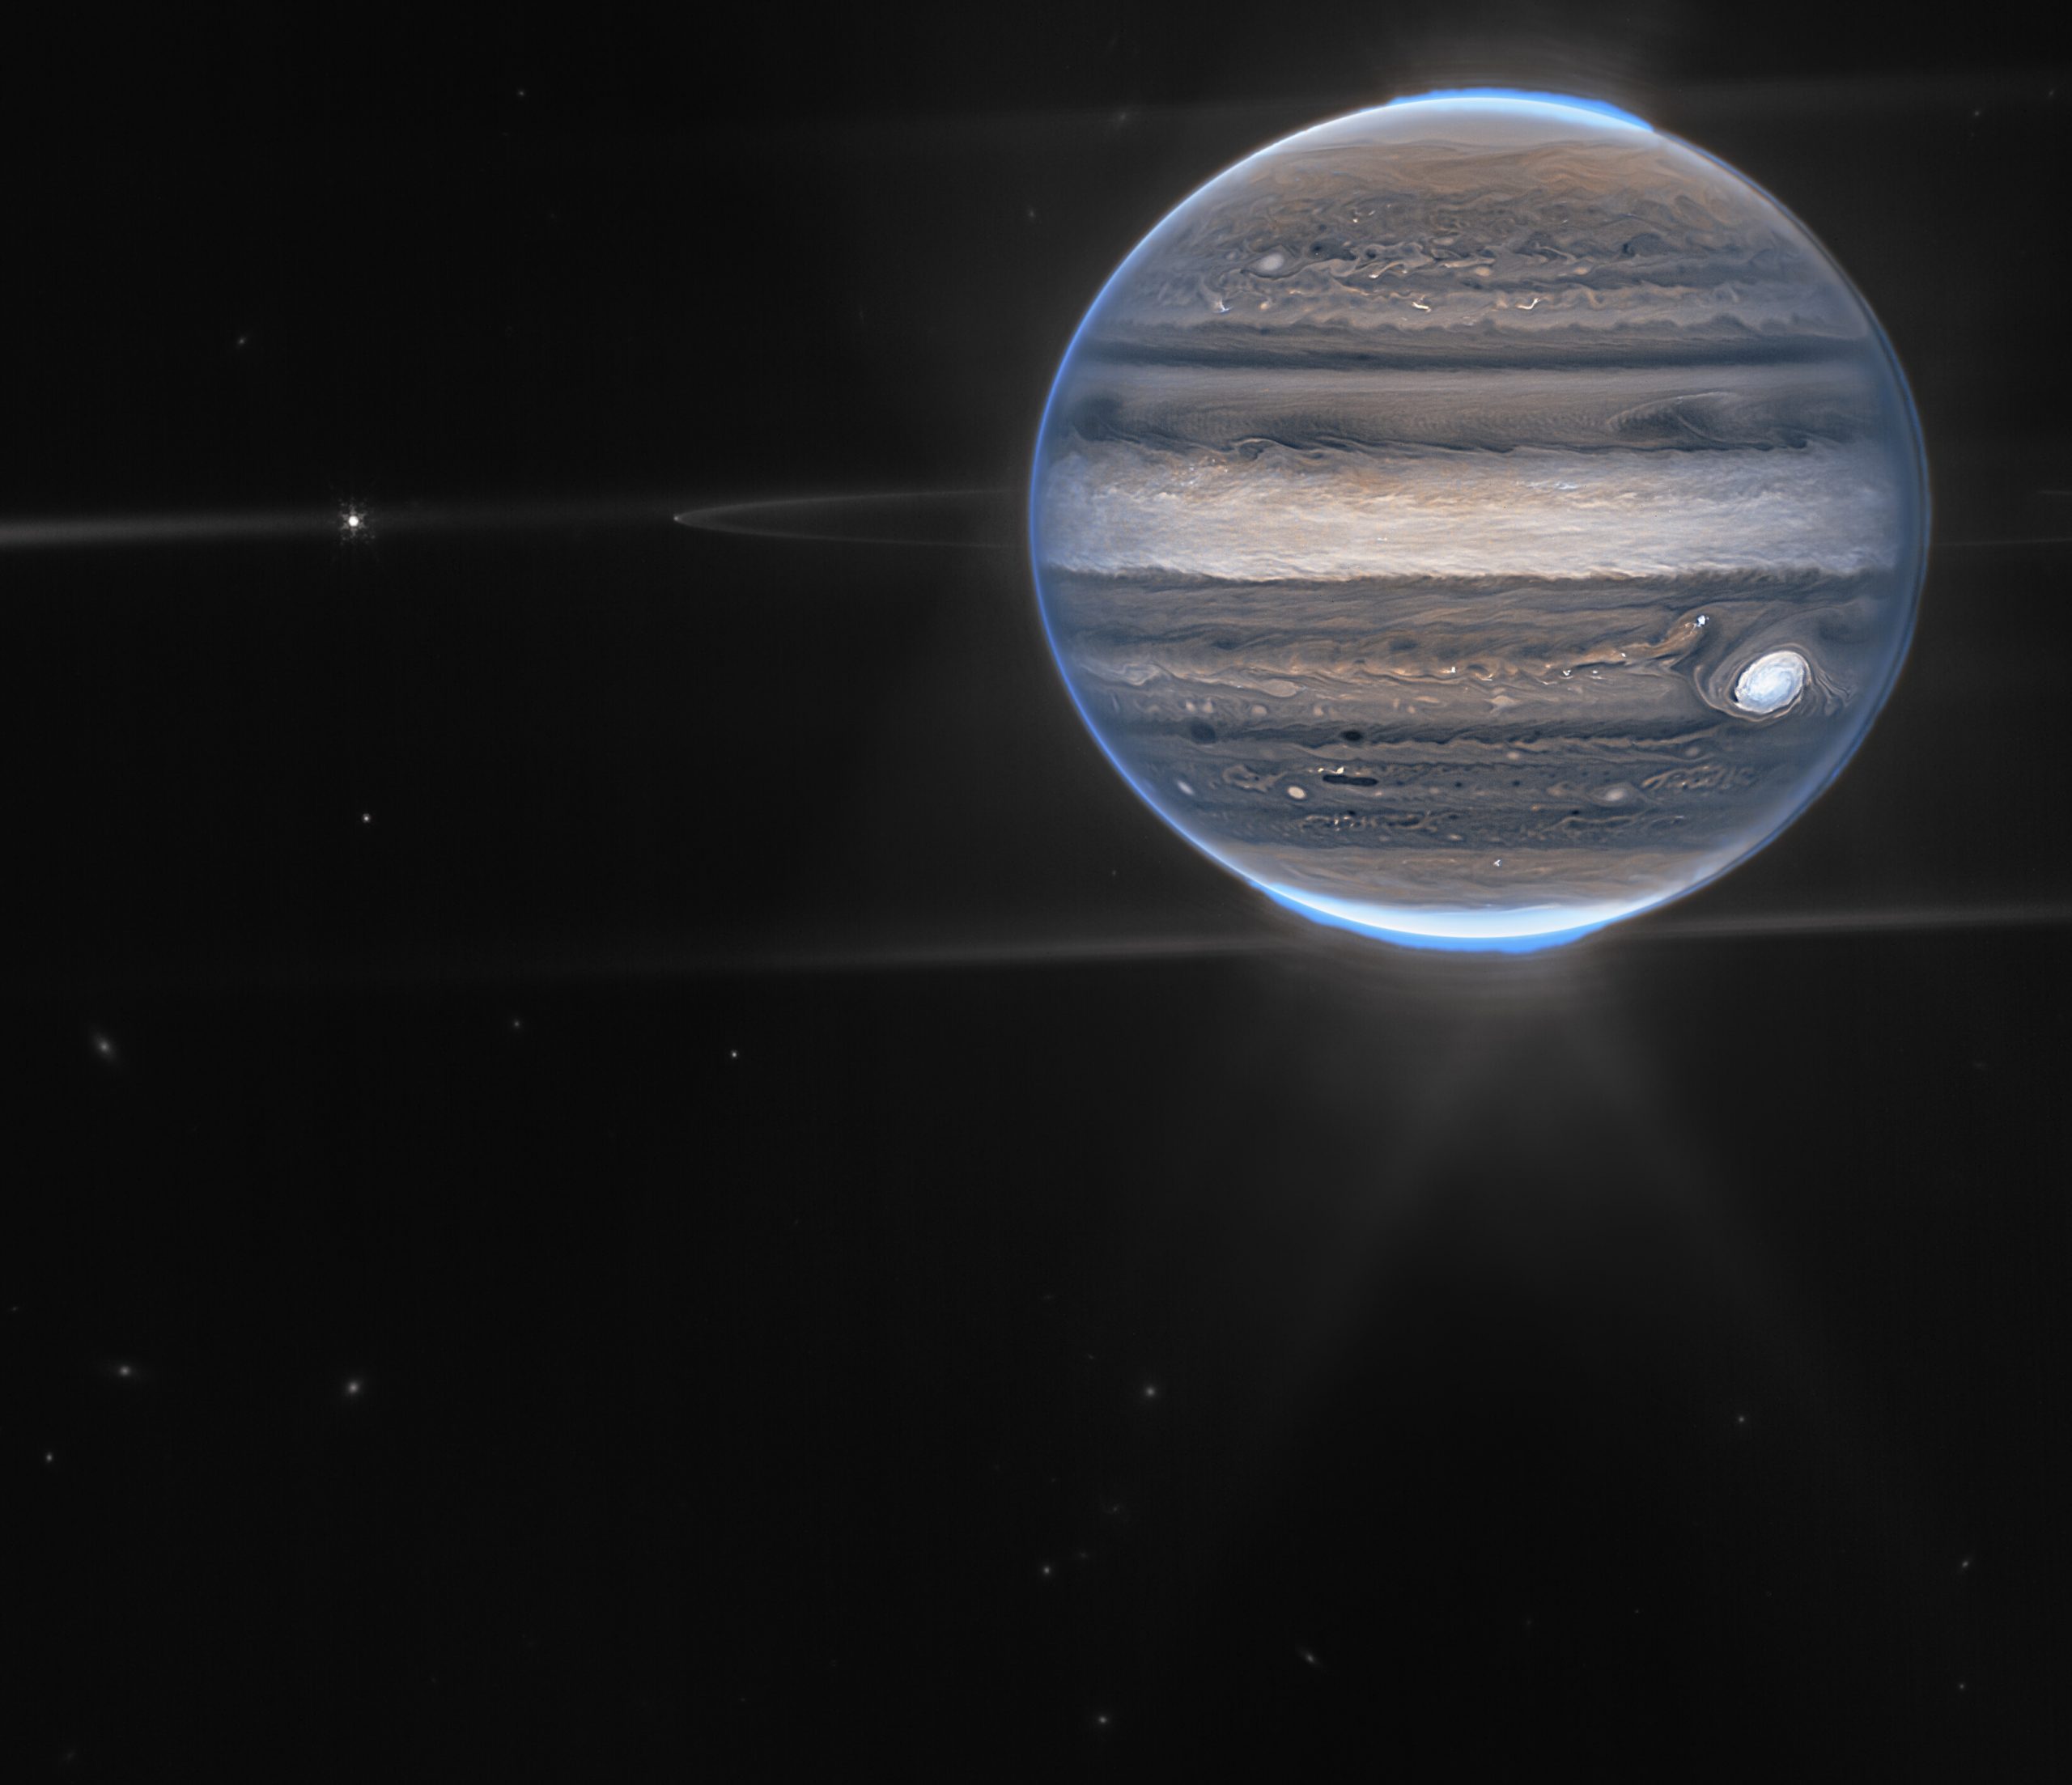 Telescópio James Webb capta imagens superdetalhadas de planeta Júpiter